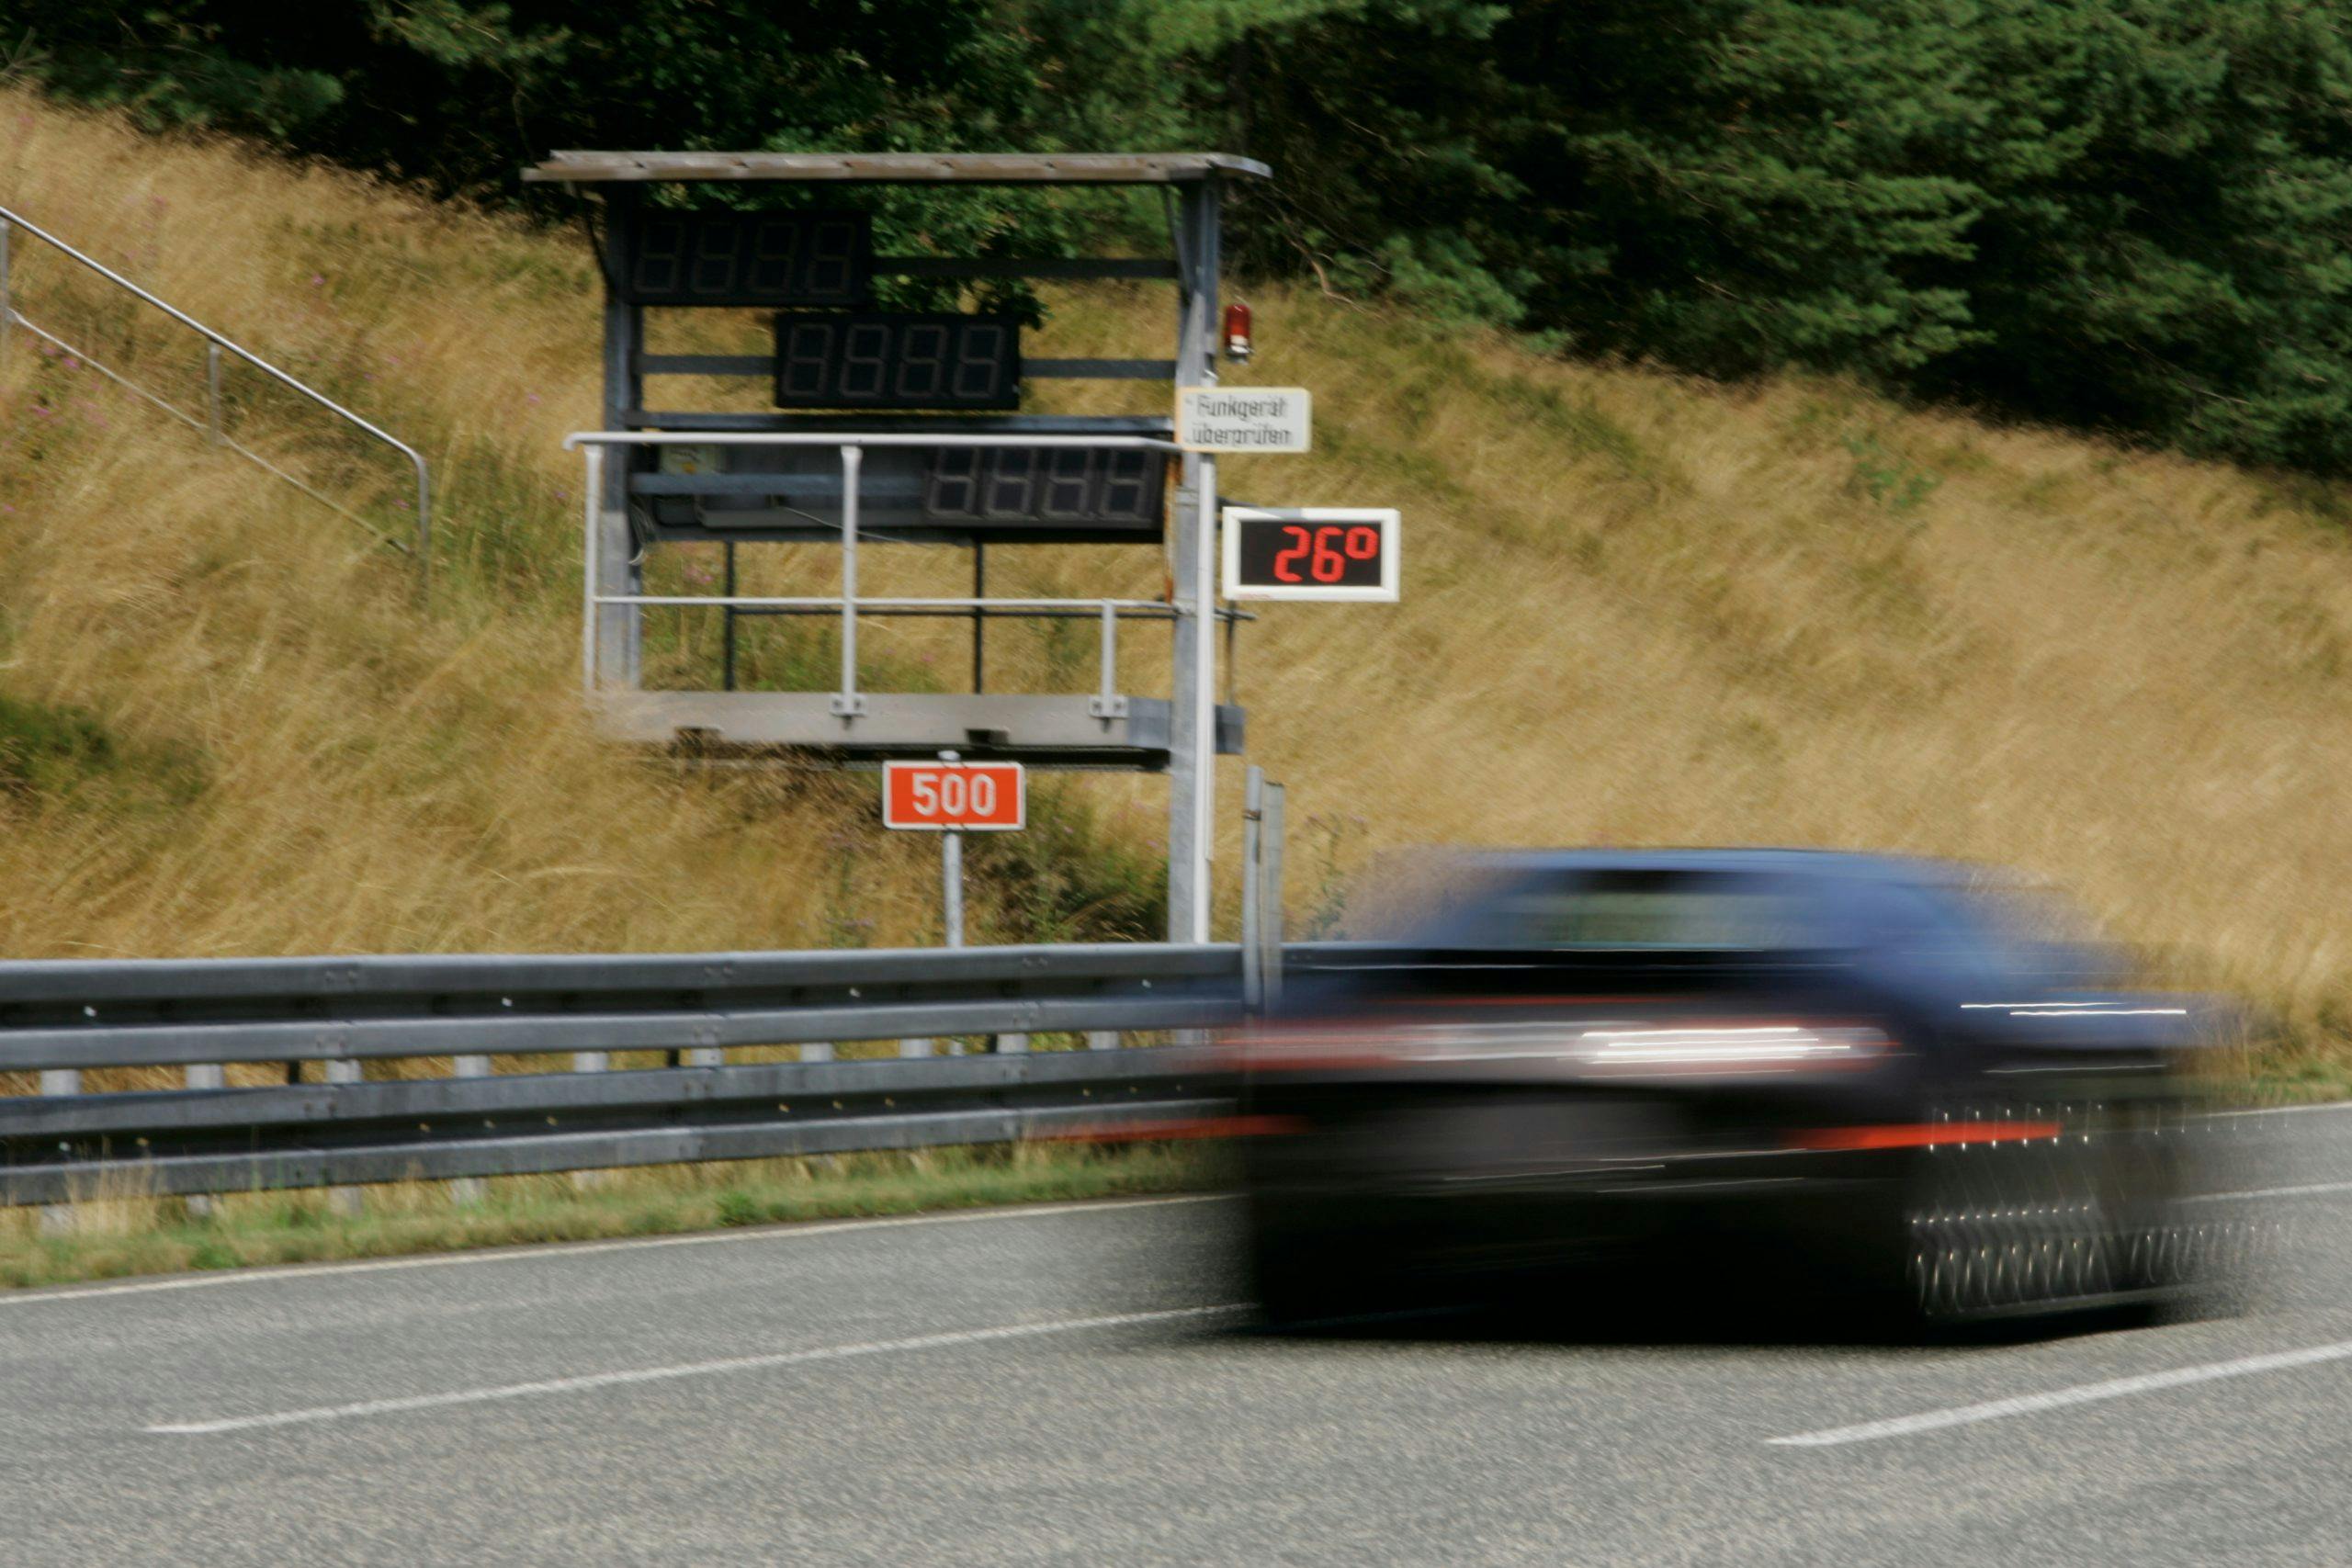 Bugatti Veyron 250 mph blur